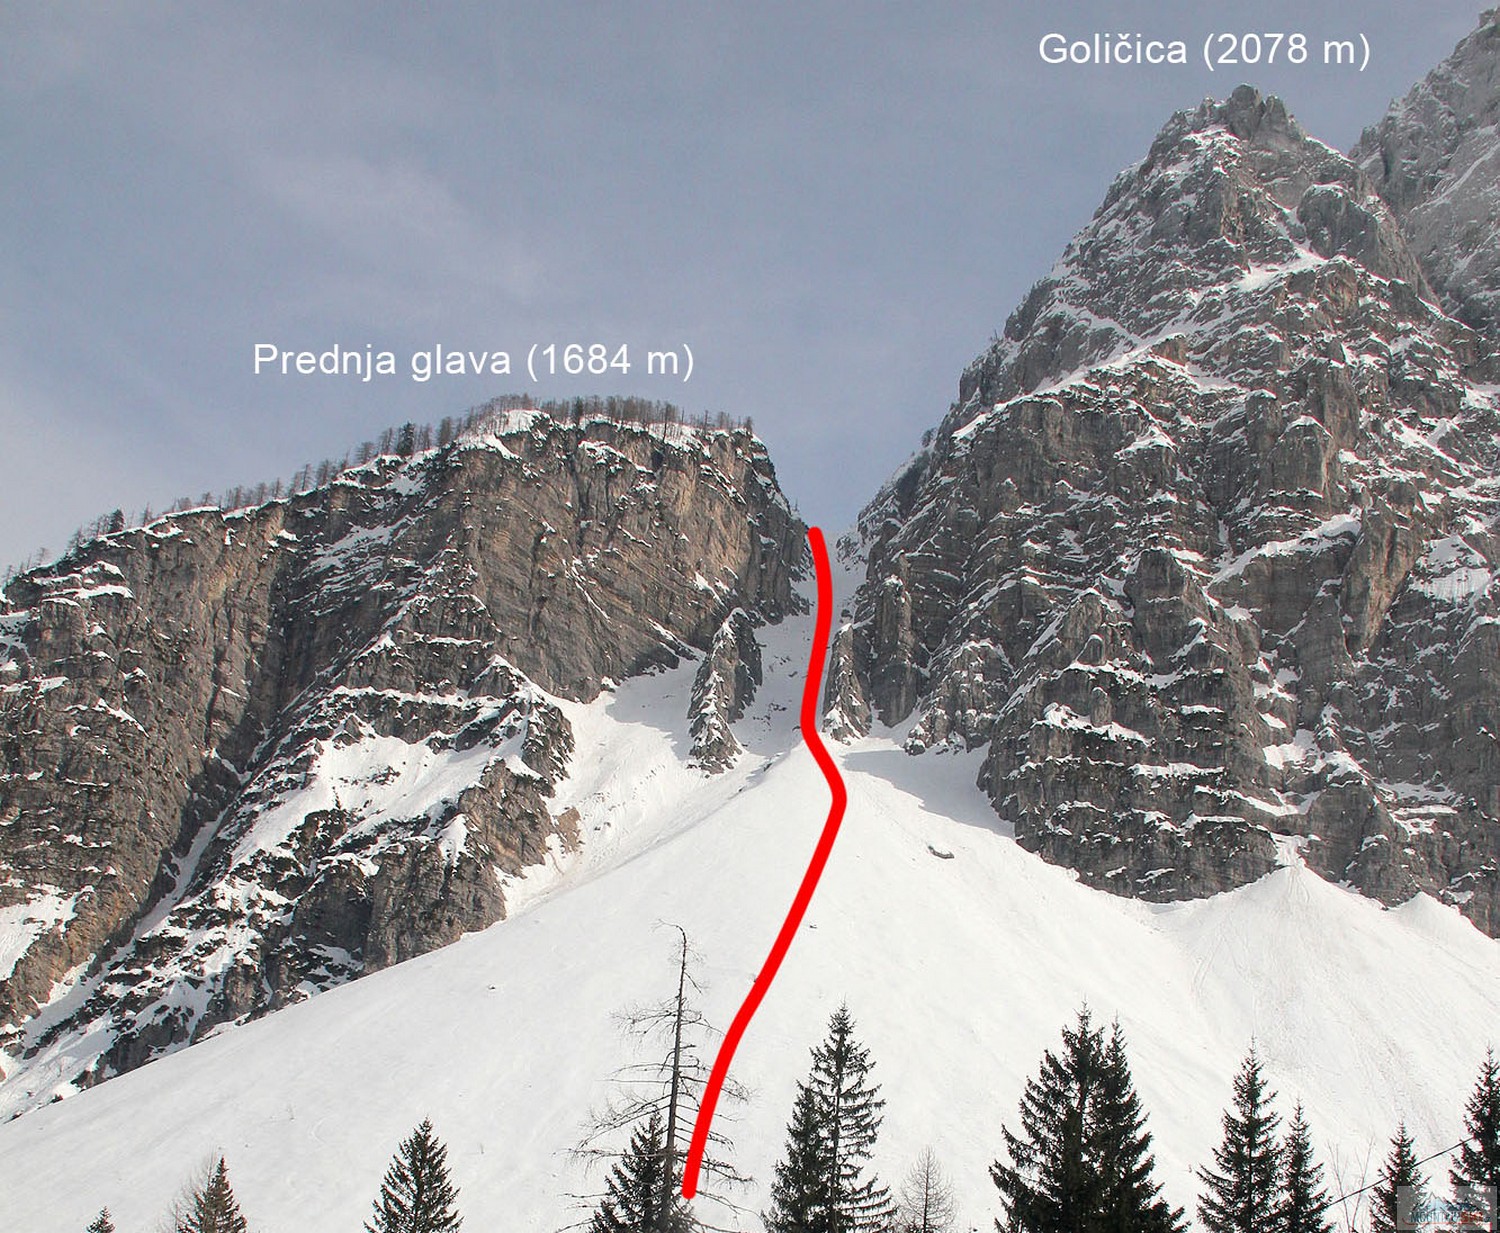 Výstupová a sjezdová trasa z Grapy mezi Prednjou glavou a Goličicí